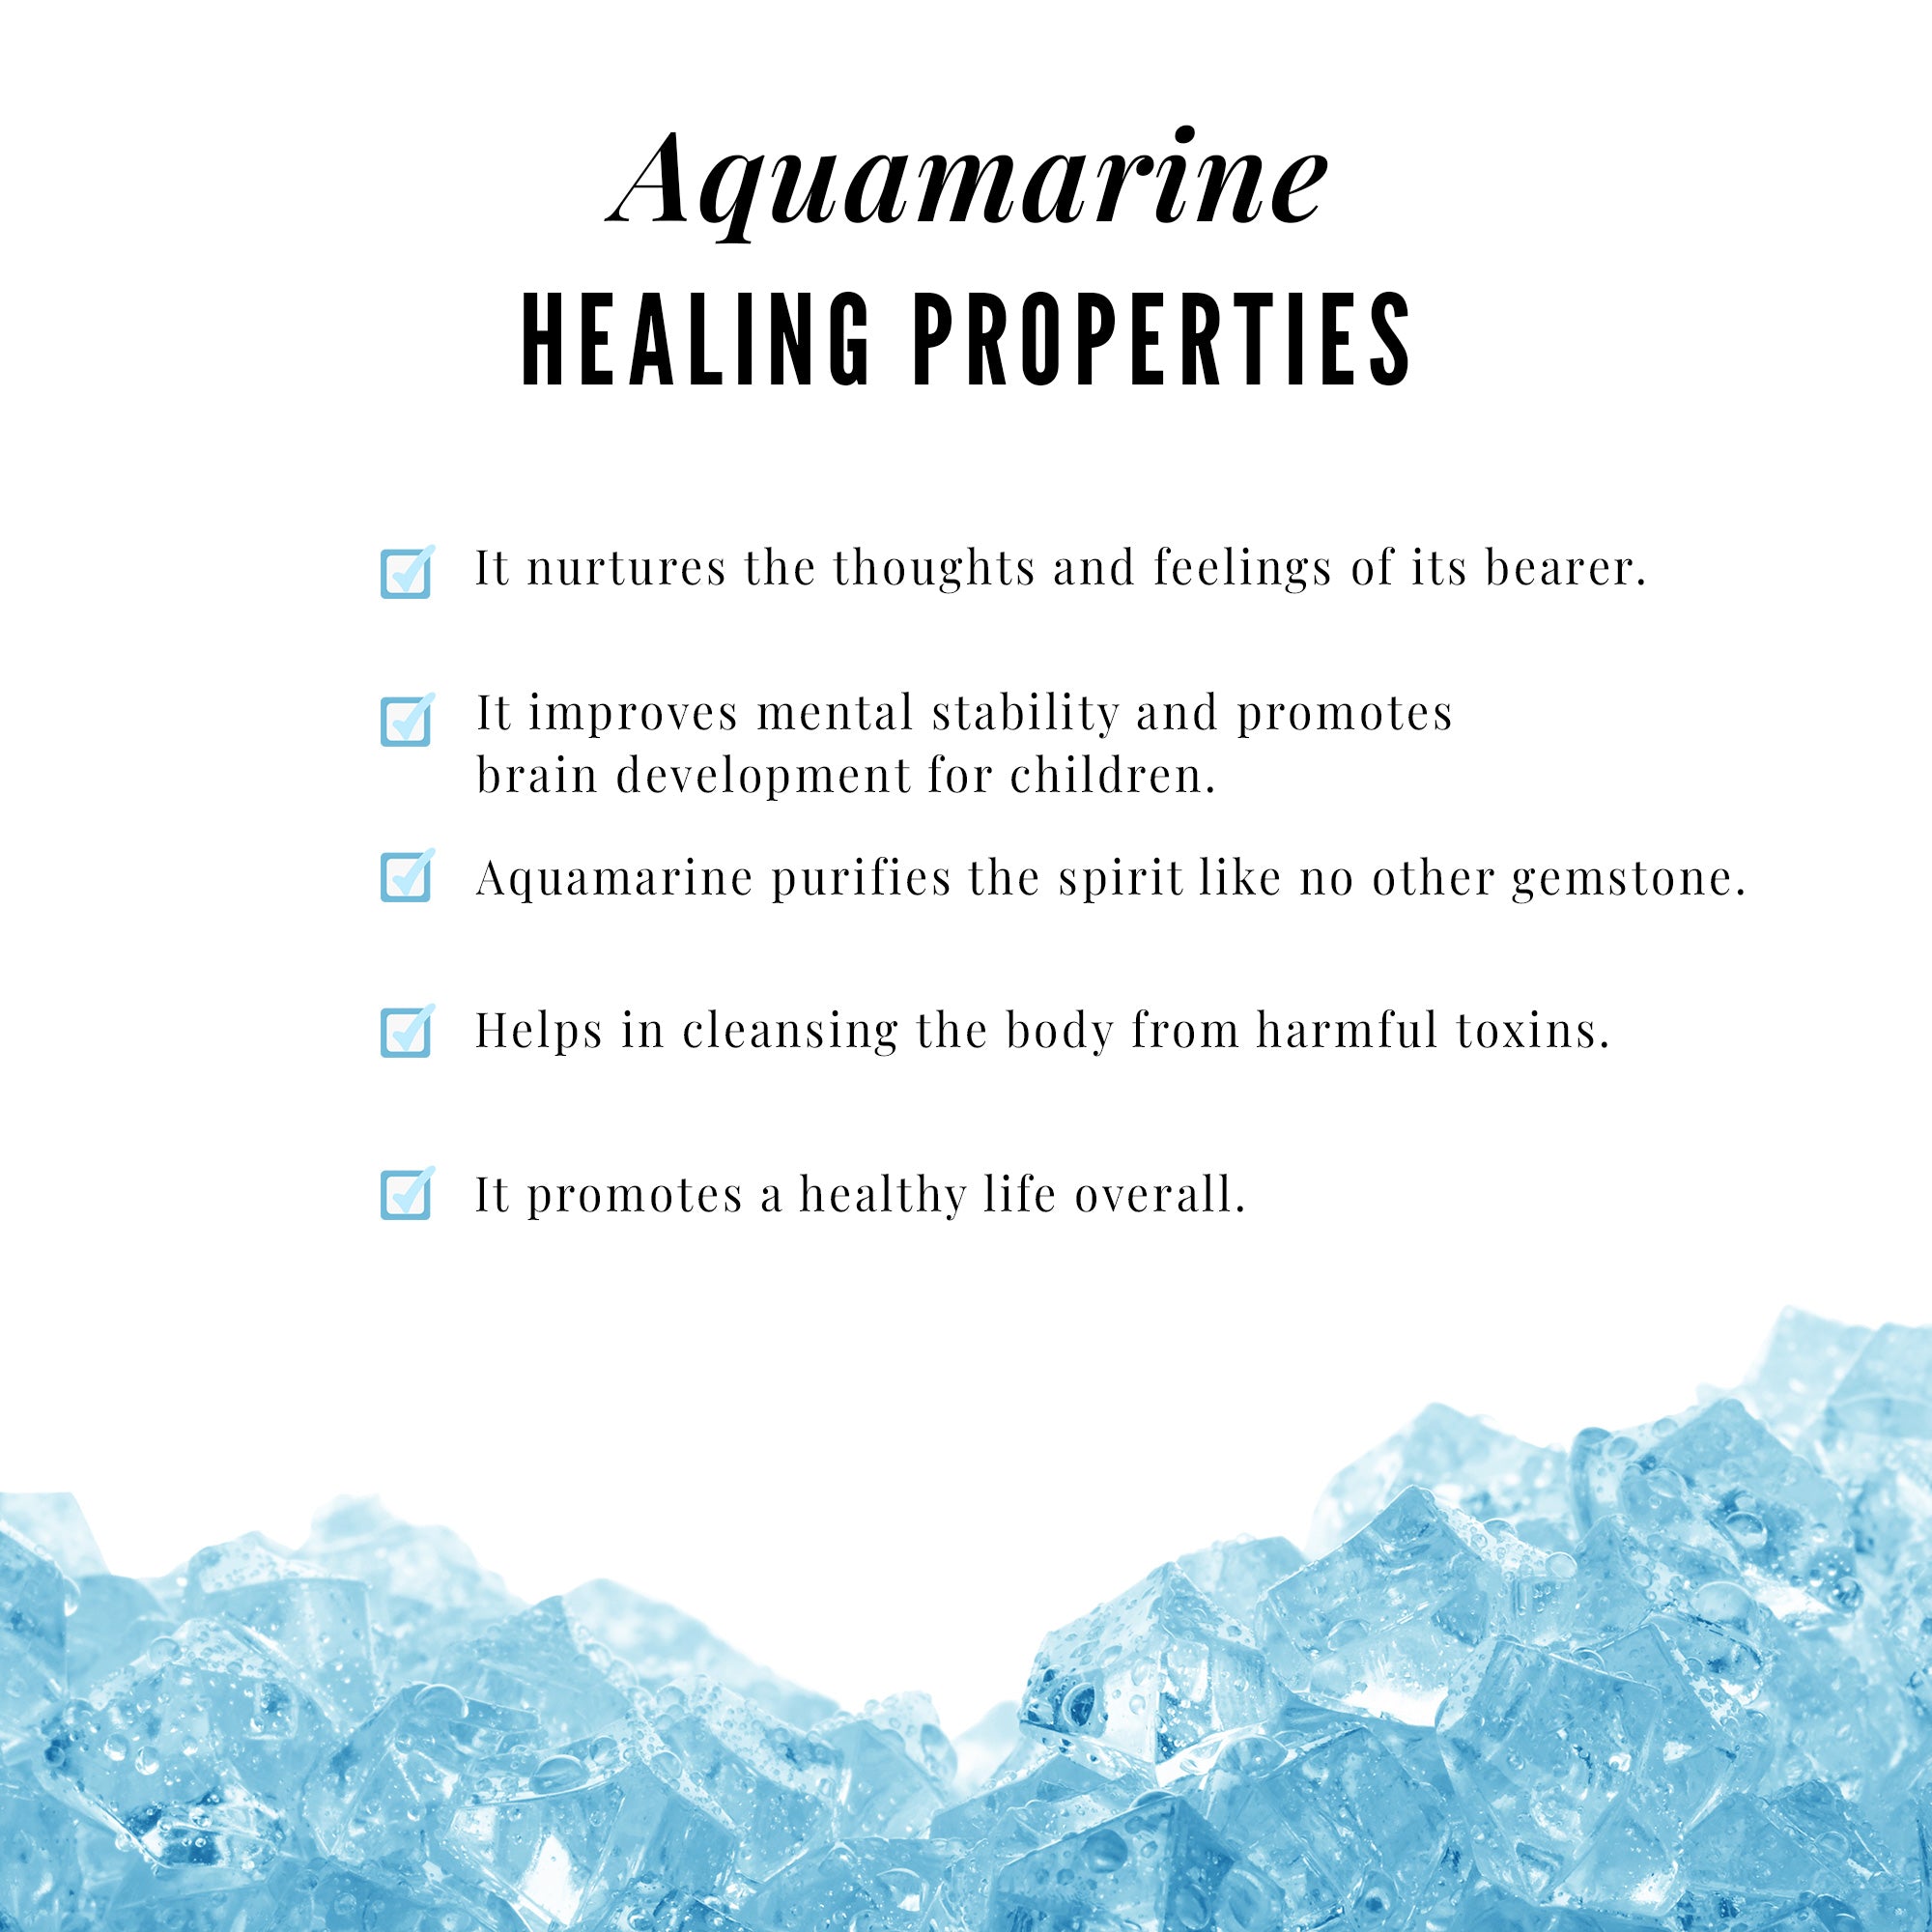 Round Aquamarine Leaf Inspired Solitaire Promise Ring Aquamarine - ( AAA ) - Quality - Rosec Jewels